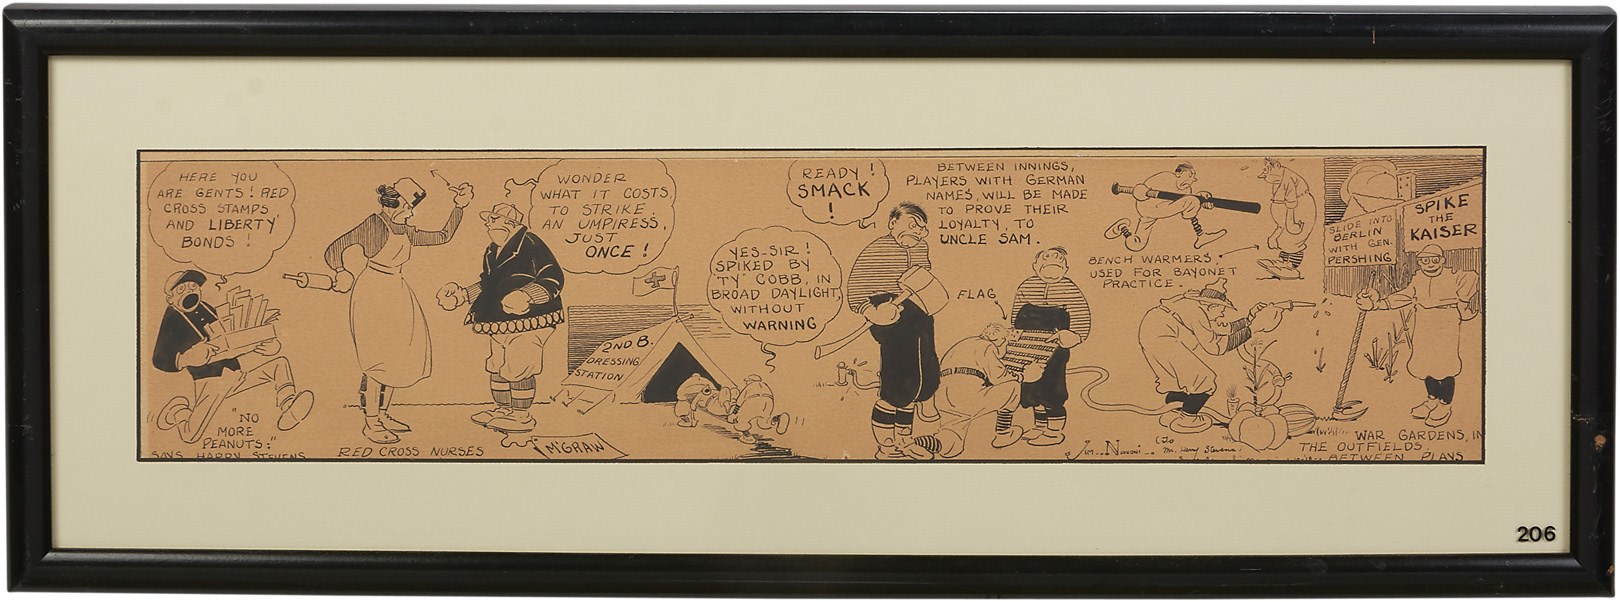 - 1910s Baseball & Presidential Comic Art Presented to Harry M. Stevens - from the Harry M. Stevens Auction (5)